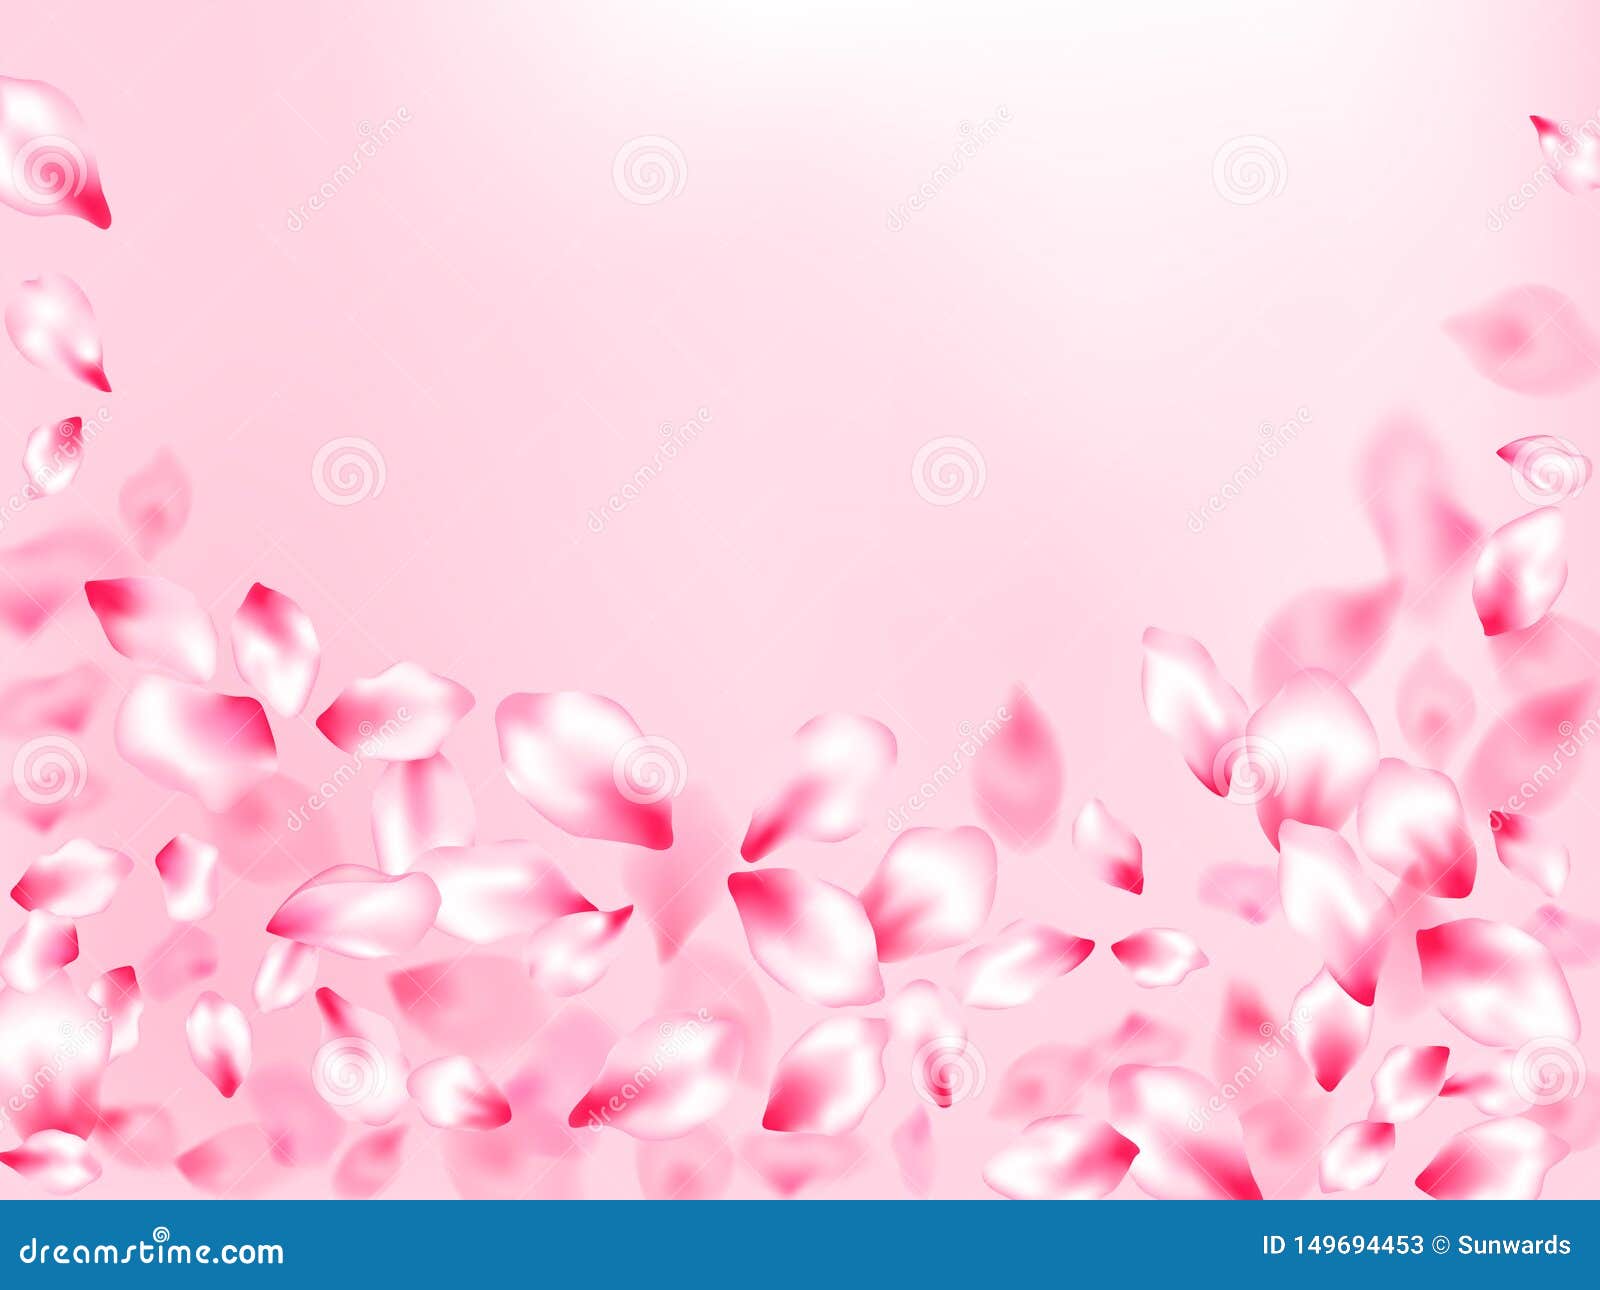 Hoa anh đào hồng là một trong những loại hoa đẹp nhất trong mùa xuân. Khi đượm bóng, sắc hồng đem lại cho bạn cảm giác yên bình và niềm vui trong cuộc sống. Hãy xem bức ảnh để thưởng thức vẻ đẹp đơn giản nhưng tinh tế của hoa anh đào.